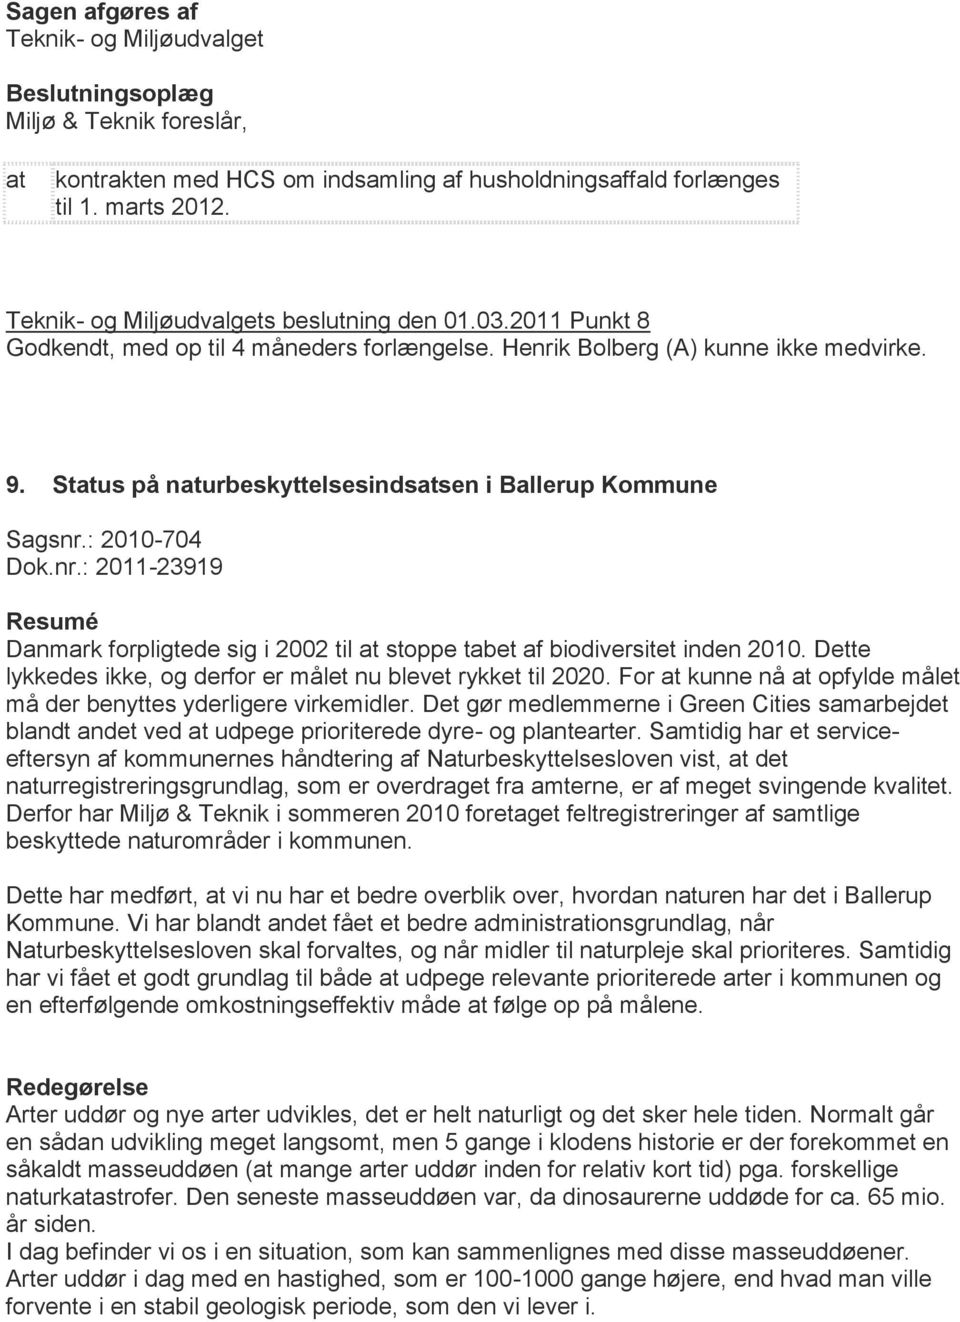 Stus på nurbeskyttelsesindssen i Ballerup Kommune Sagsnr.: 2010-704 Dok.nr.: 2011-23919 Resumé Danmark forpligtede sig i 2002 til stoppe tabet af biodiversitet inden 2010.